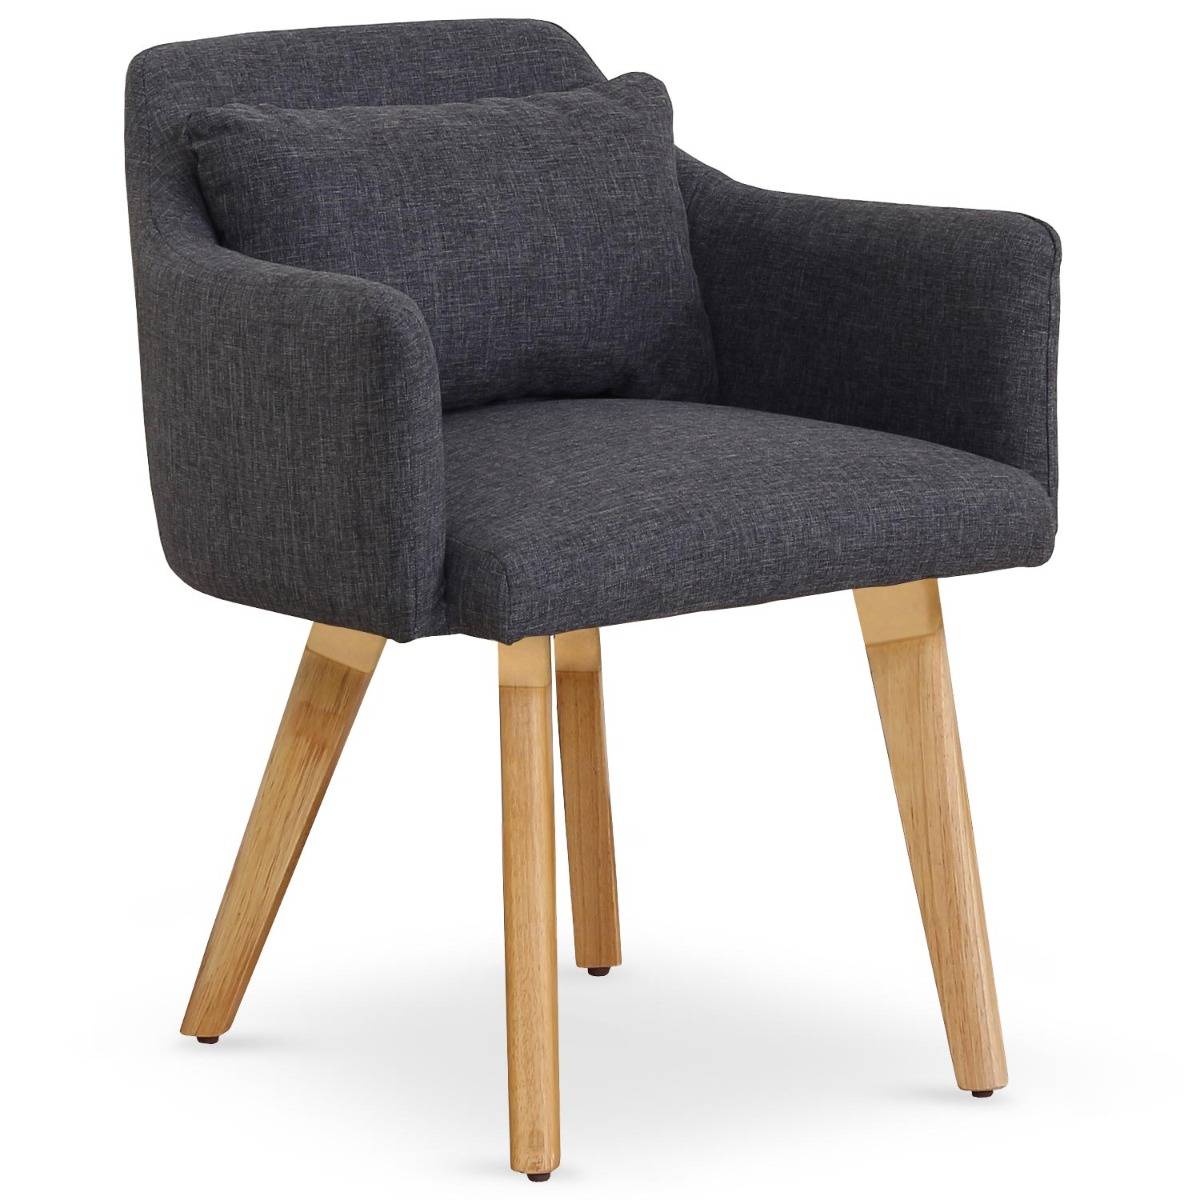 Set van 20 Gybson Scandinavische stoelen / fauteuils Donkergrijze stof